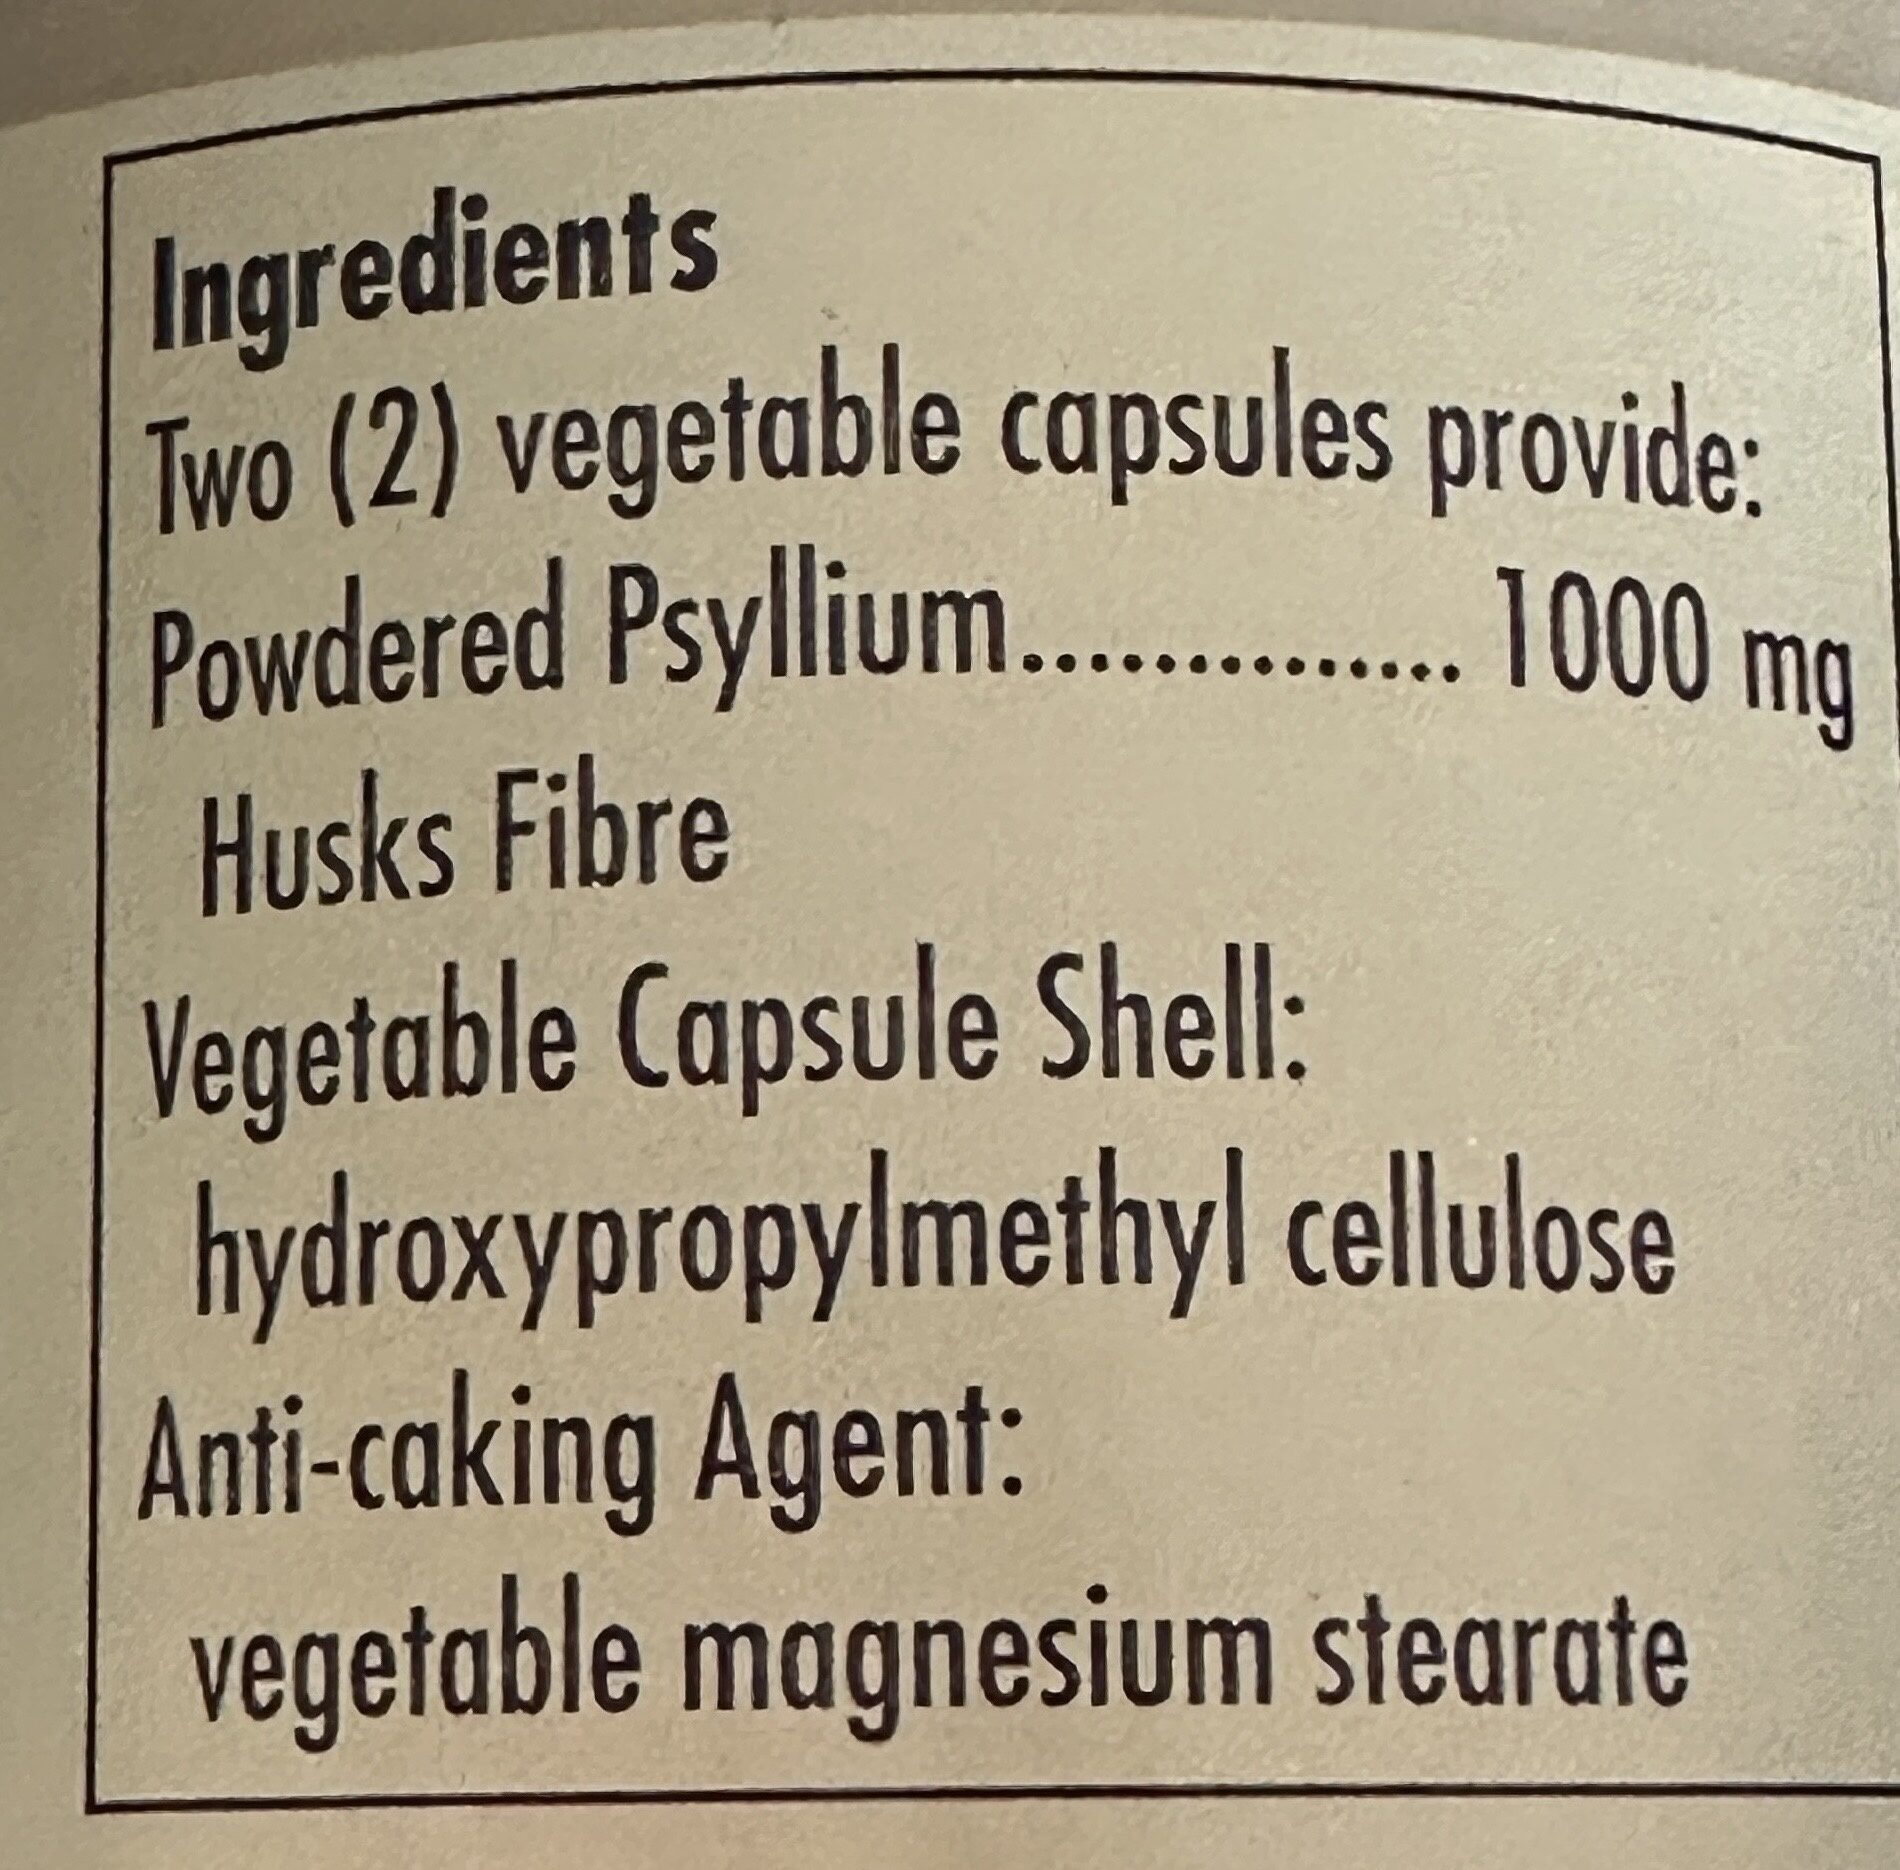 Psyllium Husk Fibre Capsules - Ingredients